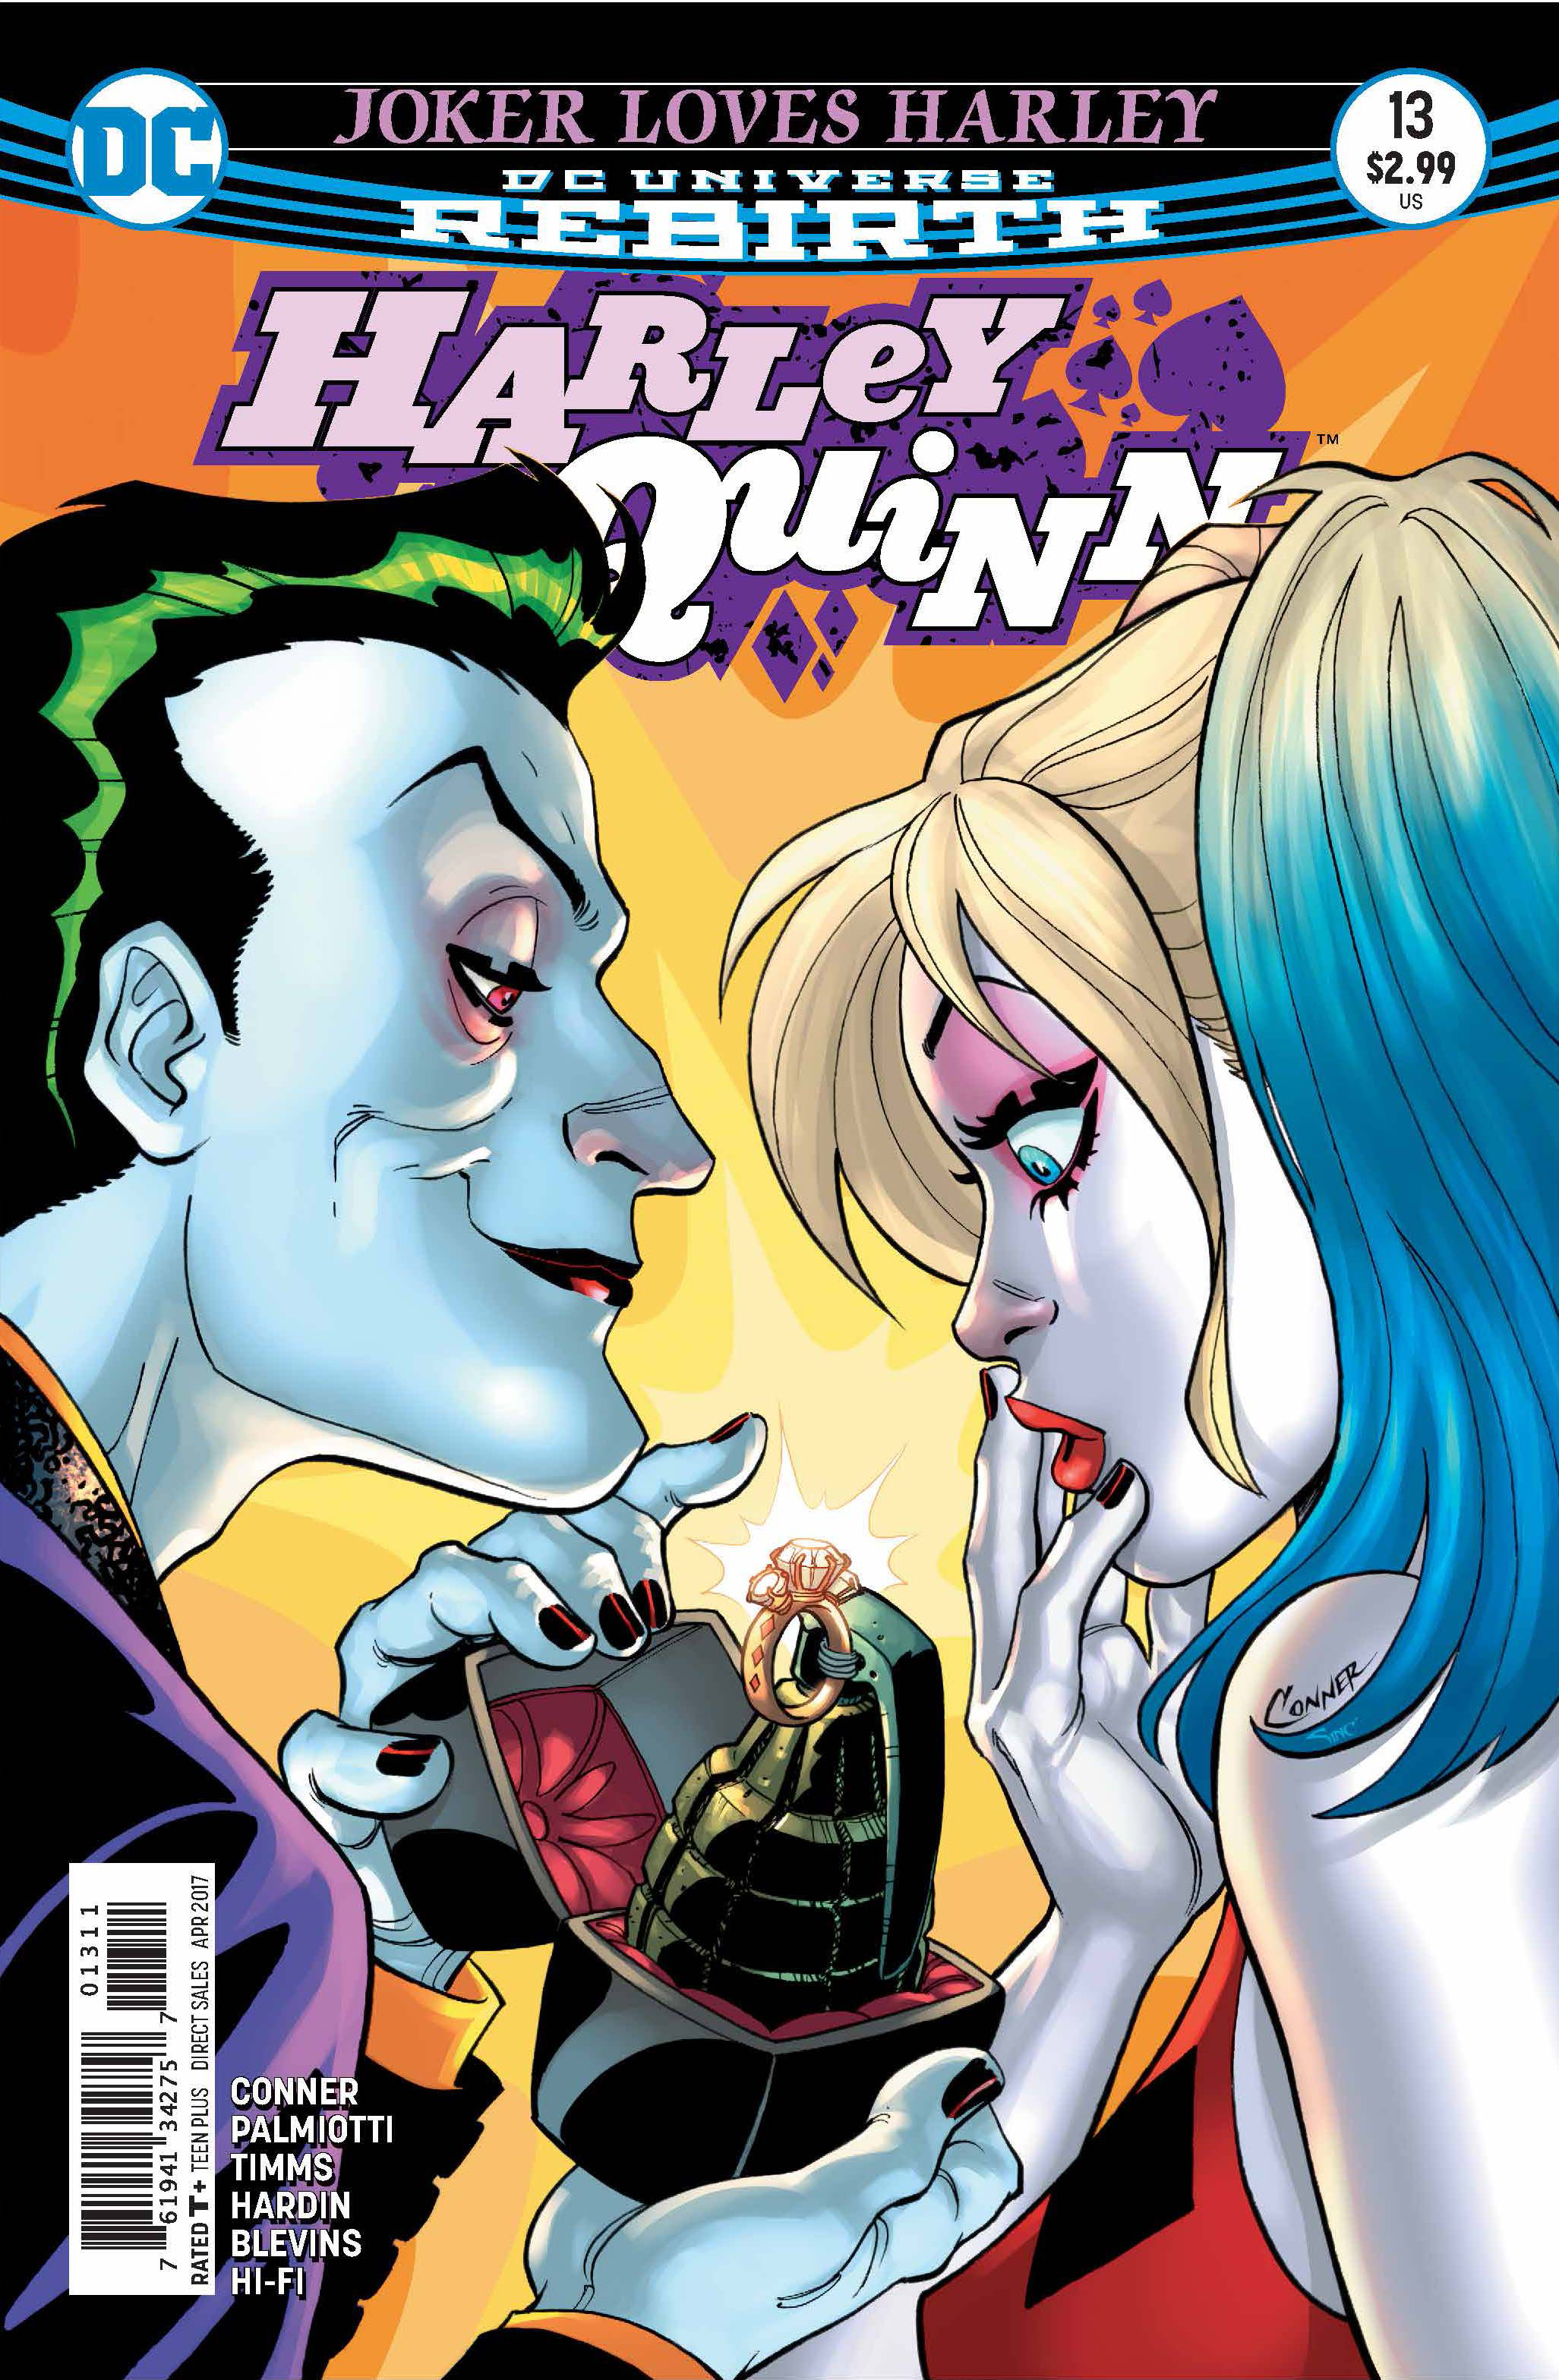 Harley quinn the joker comic